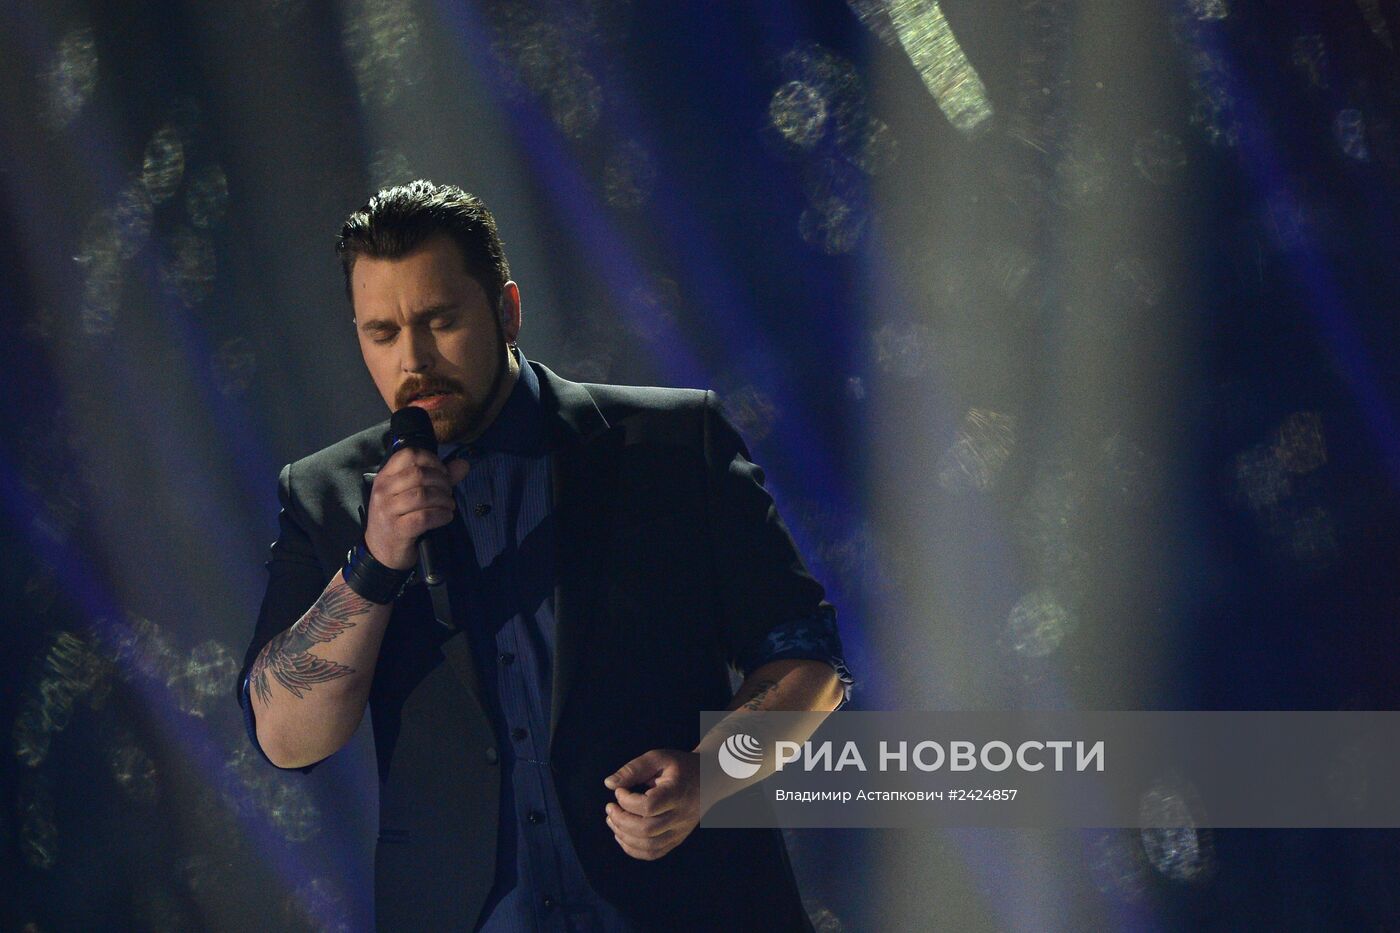 Второй полуфинал международного конкурса песни "Евровидение-2014"